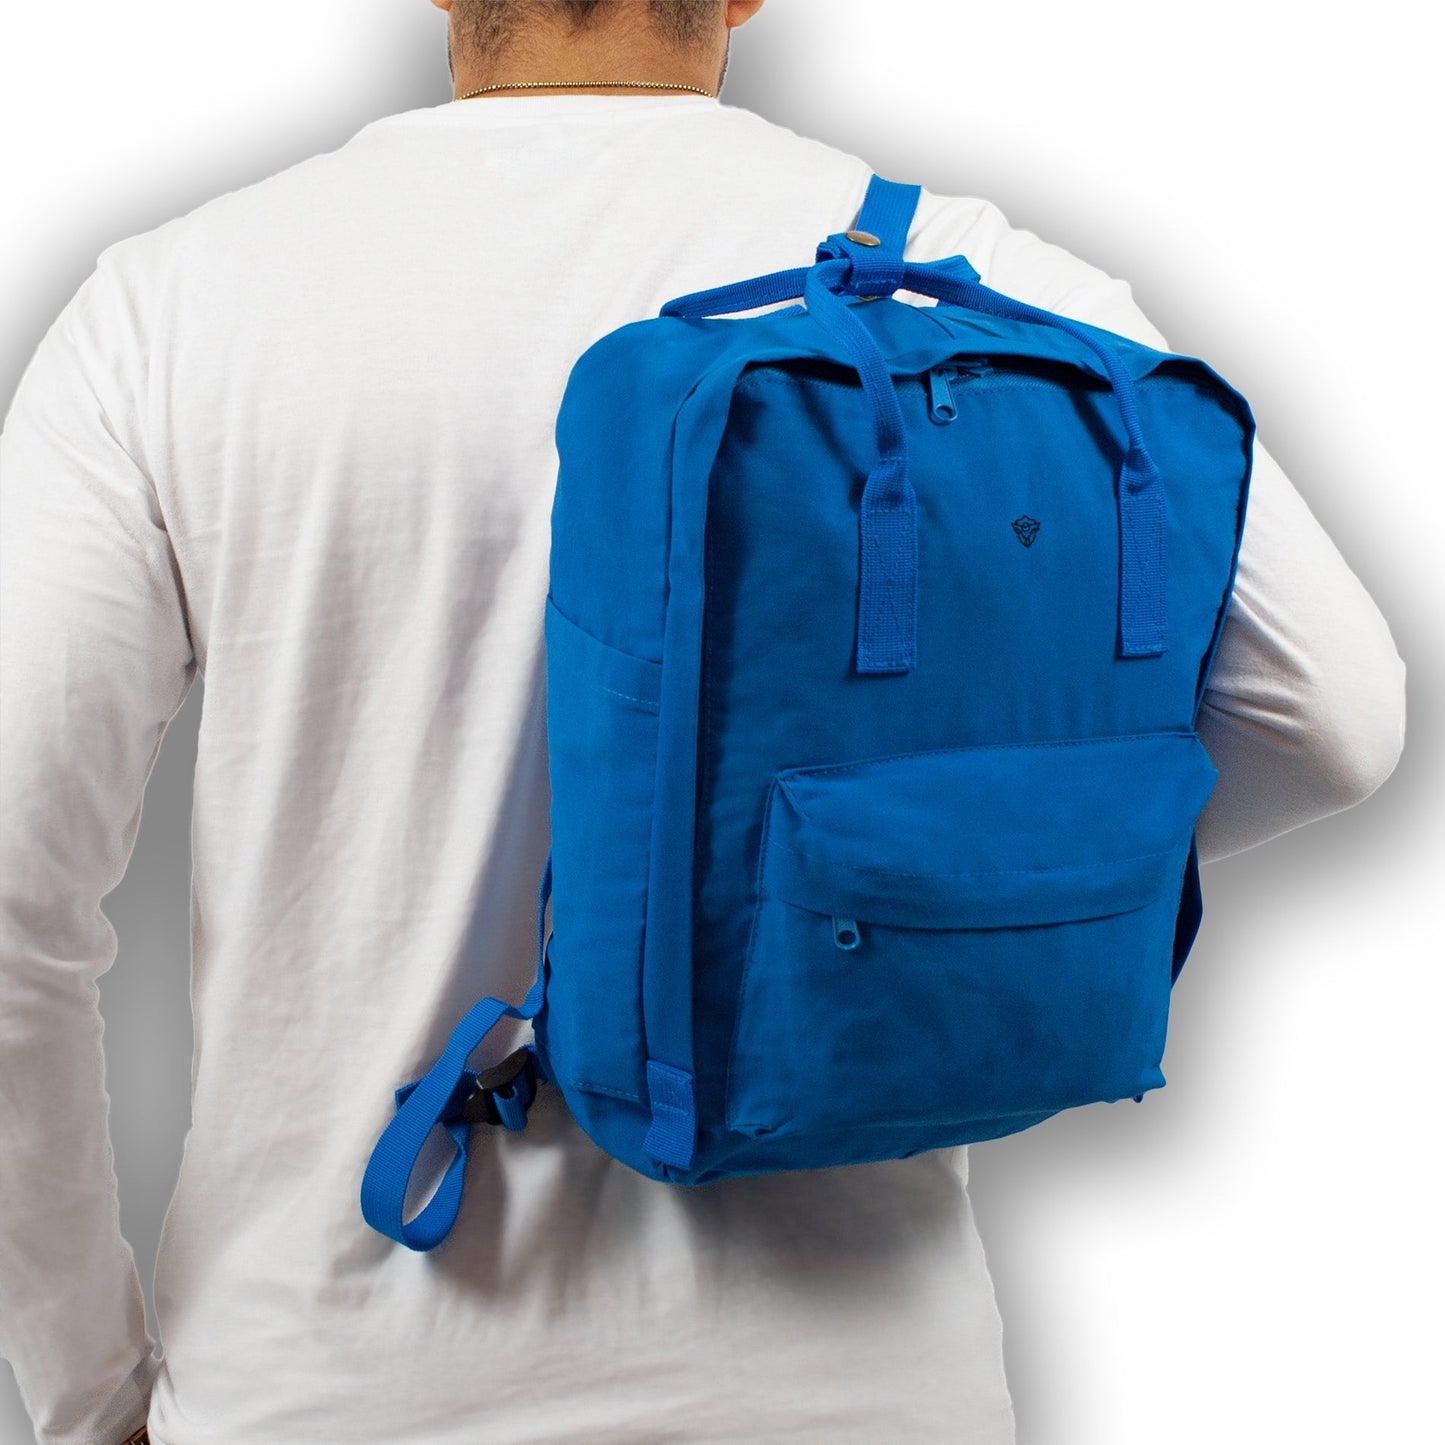 Big Moves - Grip Case Backpack - Big Moves